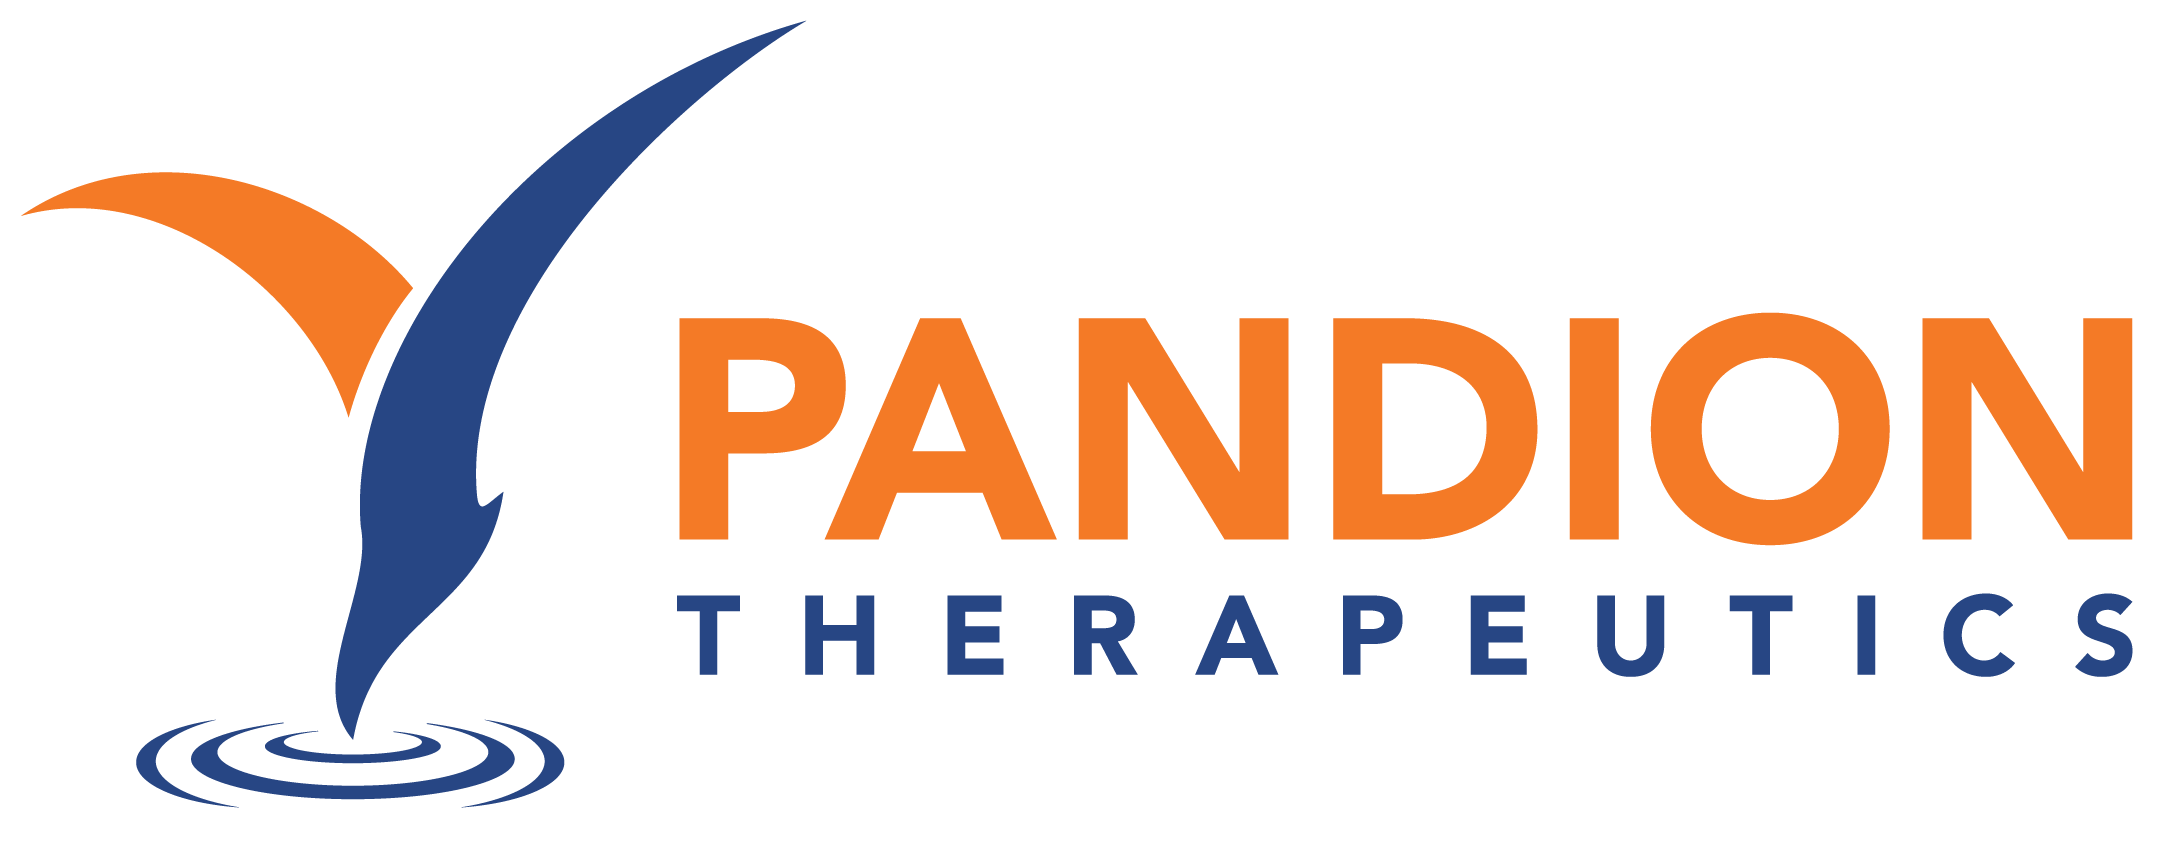 Pandion-Logo-RGB-large.png